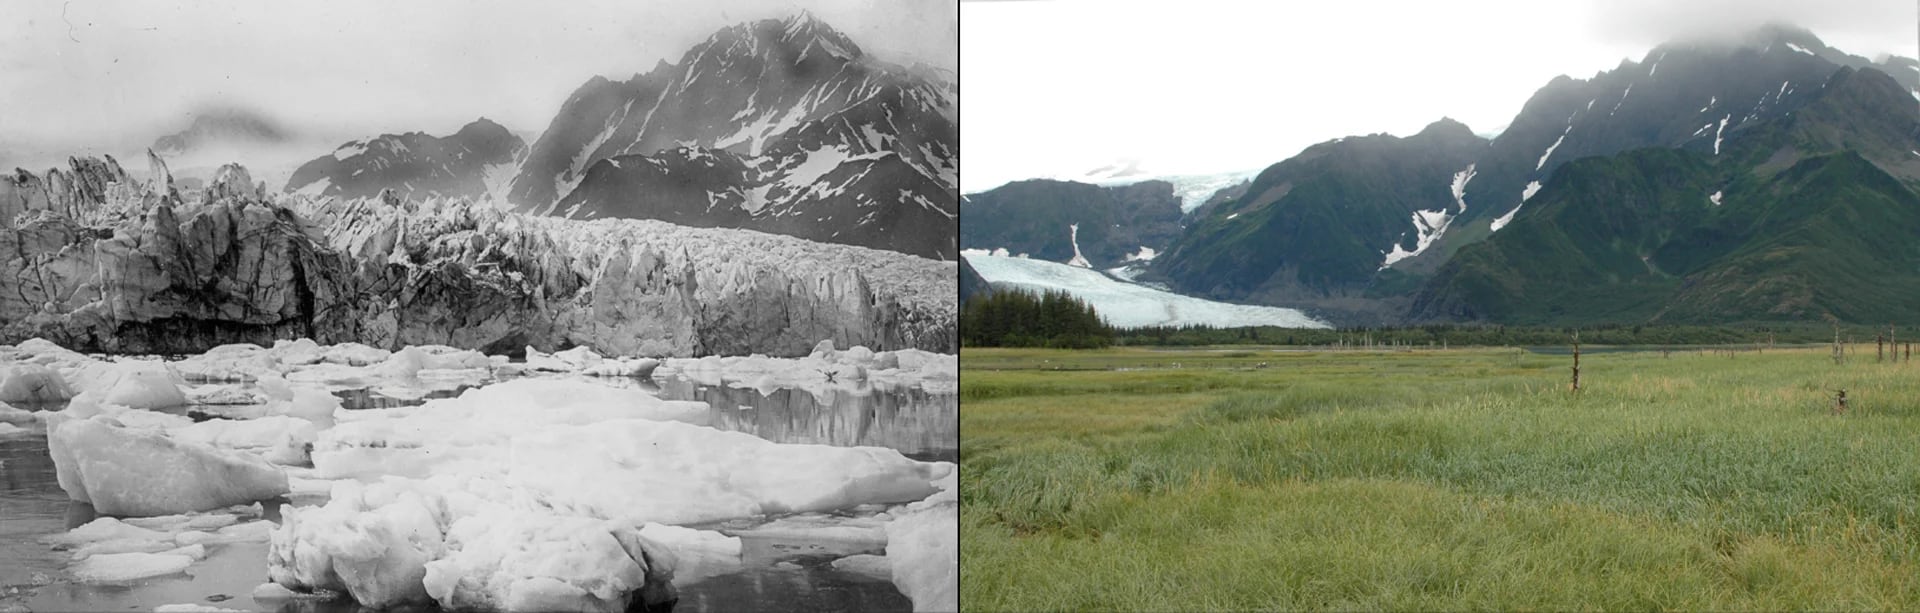 Derretimiento del Glaciar Pedersen, Alaska: verano de 1920 al 10 de agosto de 2005